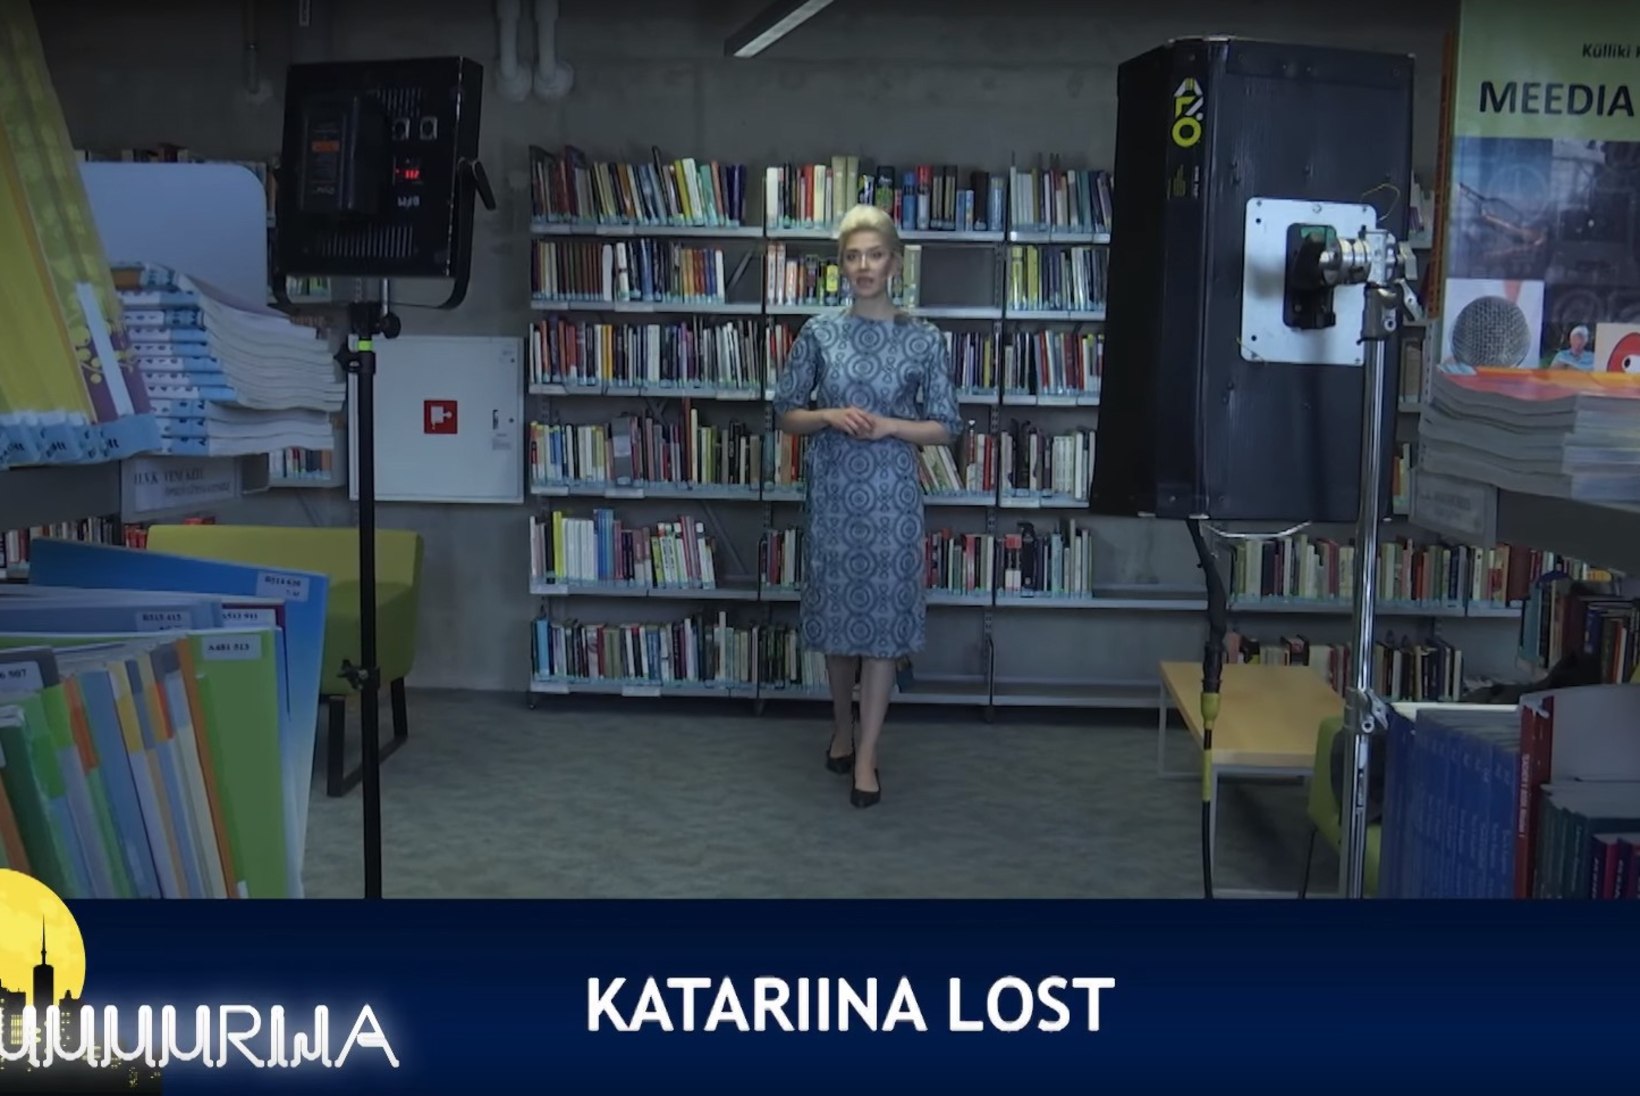 VIDEO | Katrin Lust „Kuuuurija“ paroodiast: enda parodeerimist on imelik vaadata, kuid see oli päris naljakas